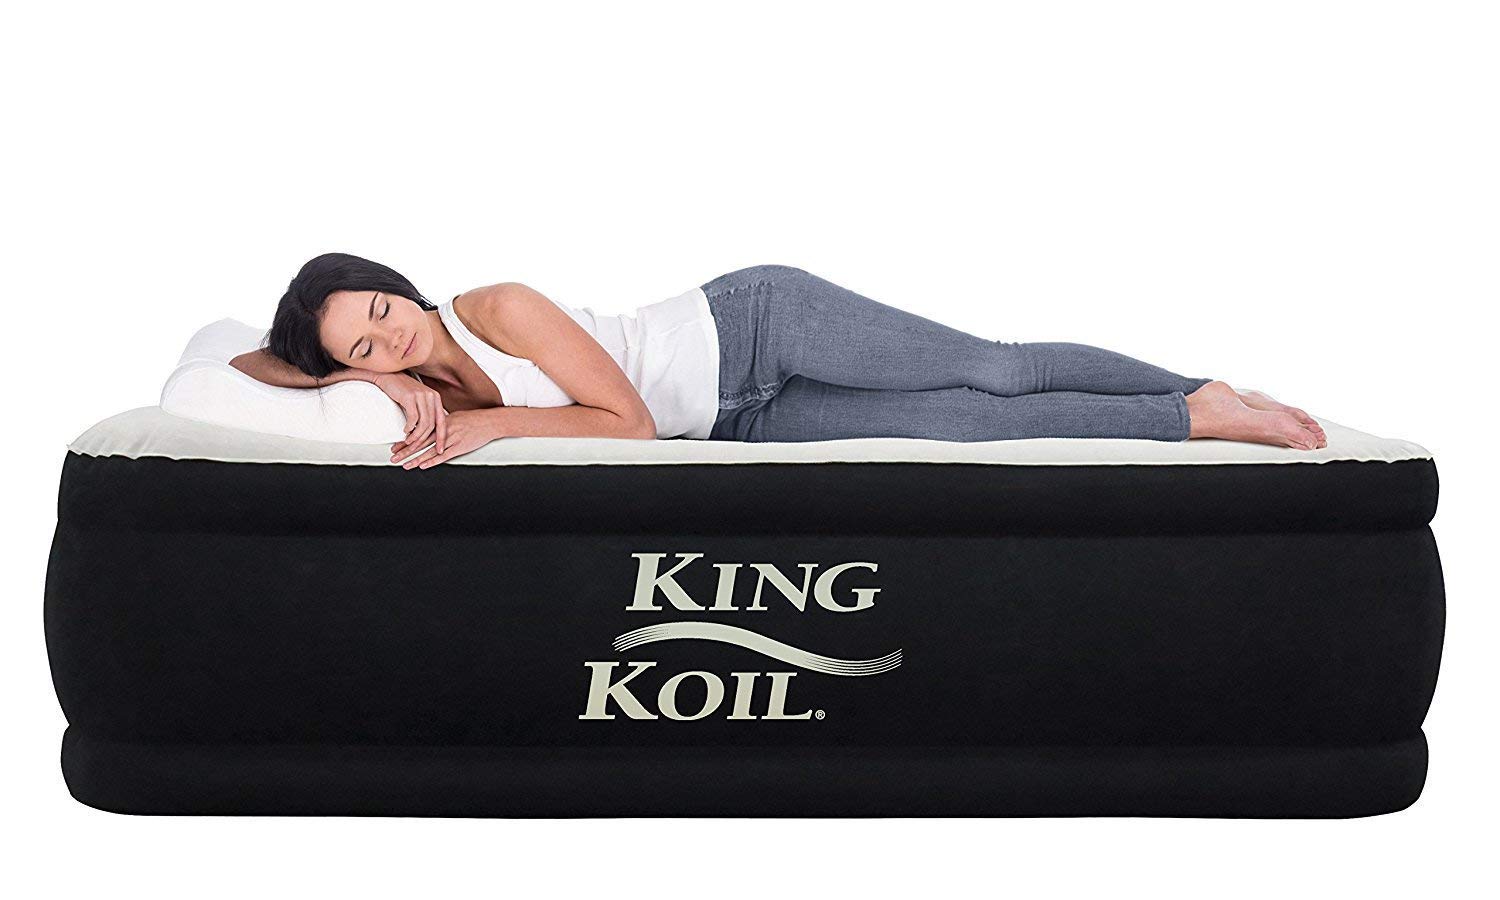 king koil air queen air mattress amazon